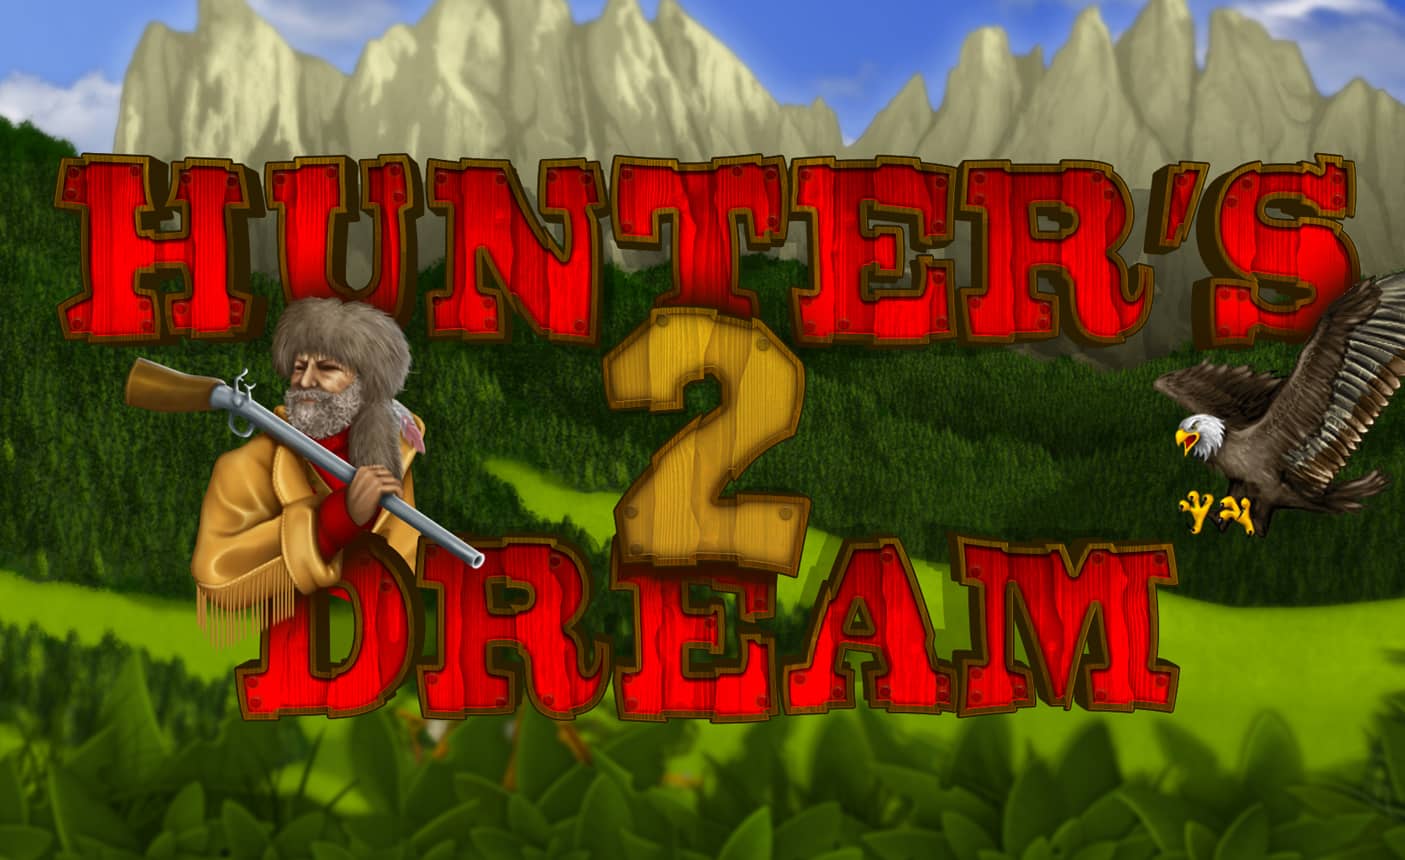 Hunter's Dream 2